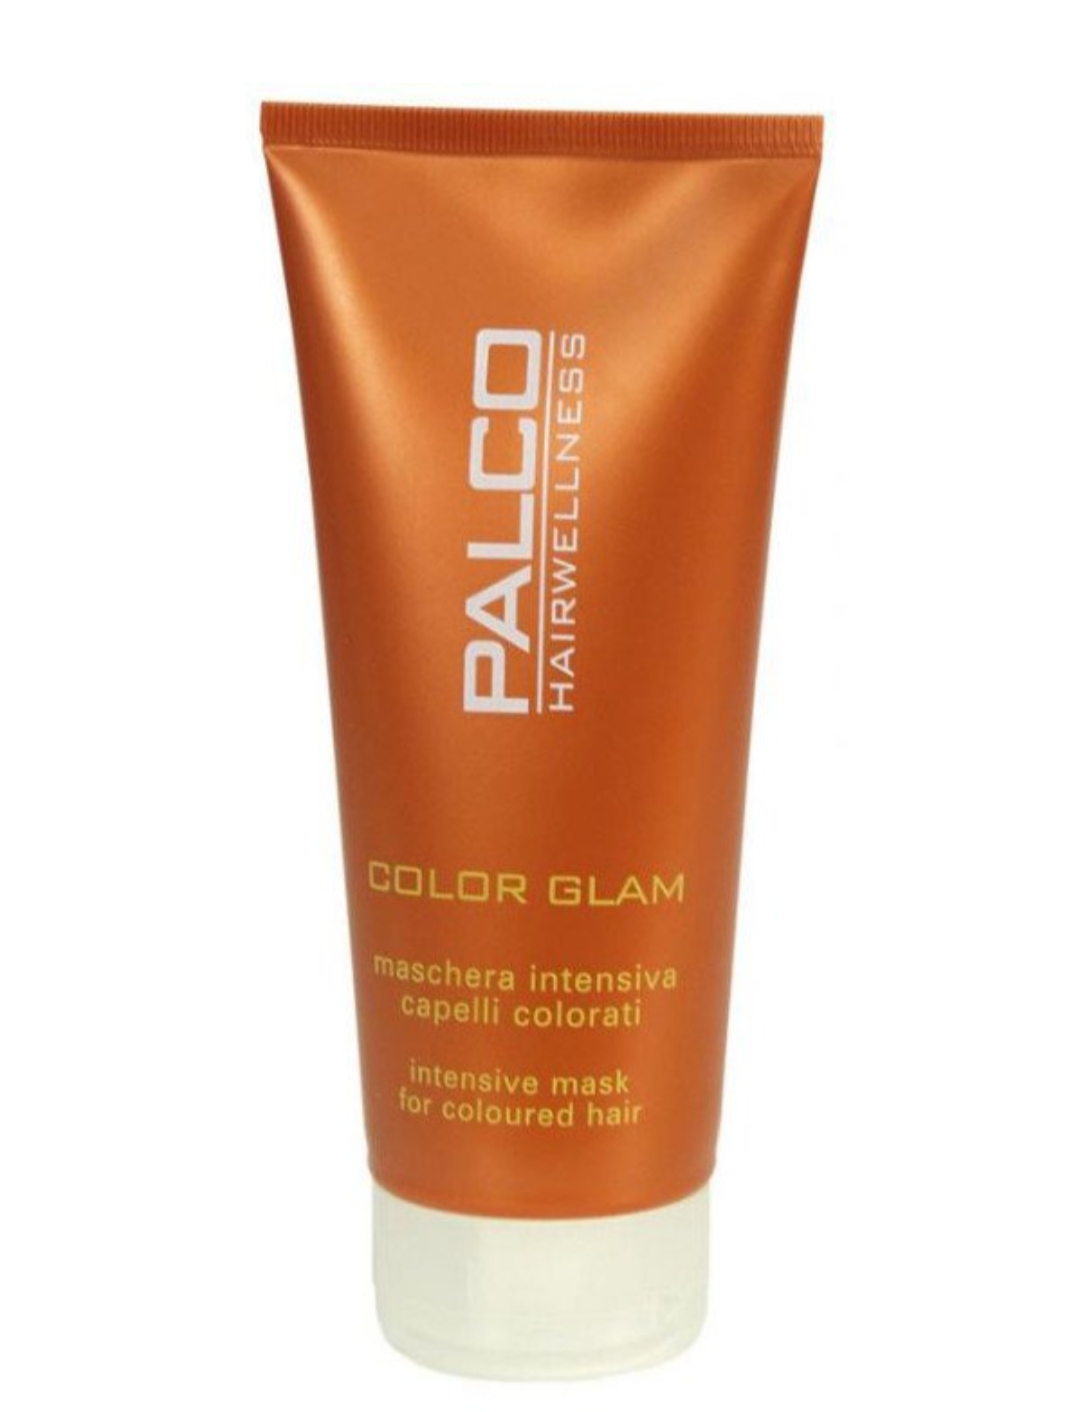 فراورده های حالت دهنده ،نرم کننده وتثبیت کننده آرایش مو (کرمها ، لوسیونها وروغنها) PALCO PROFESSIONAL Color Glam Intensive Mask 200ml